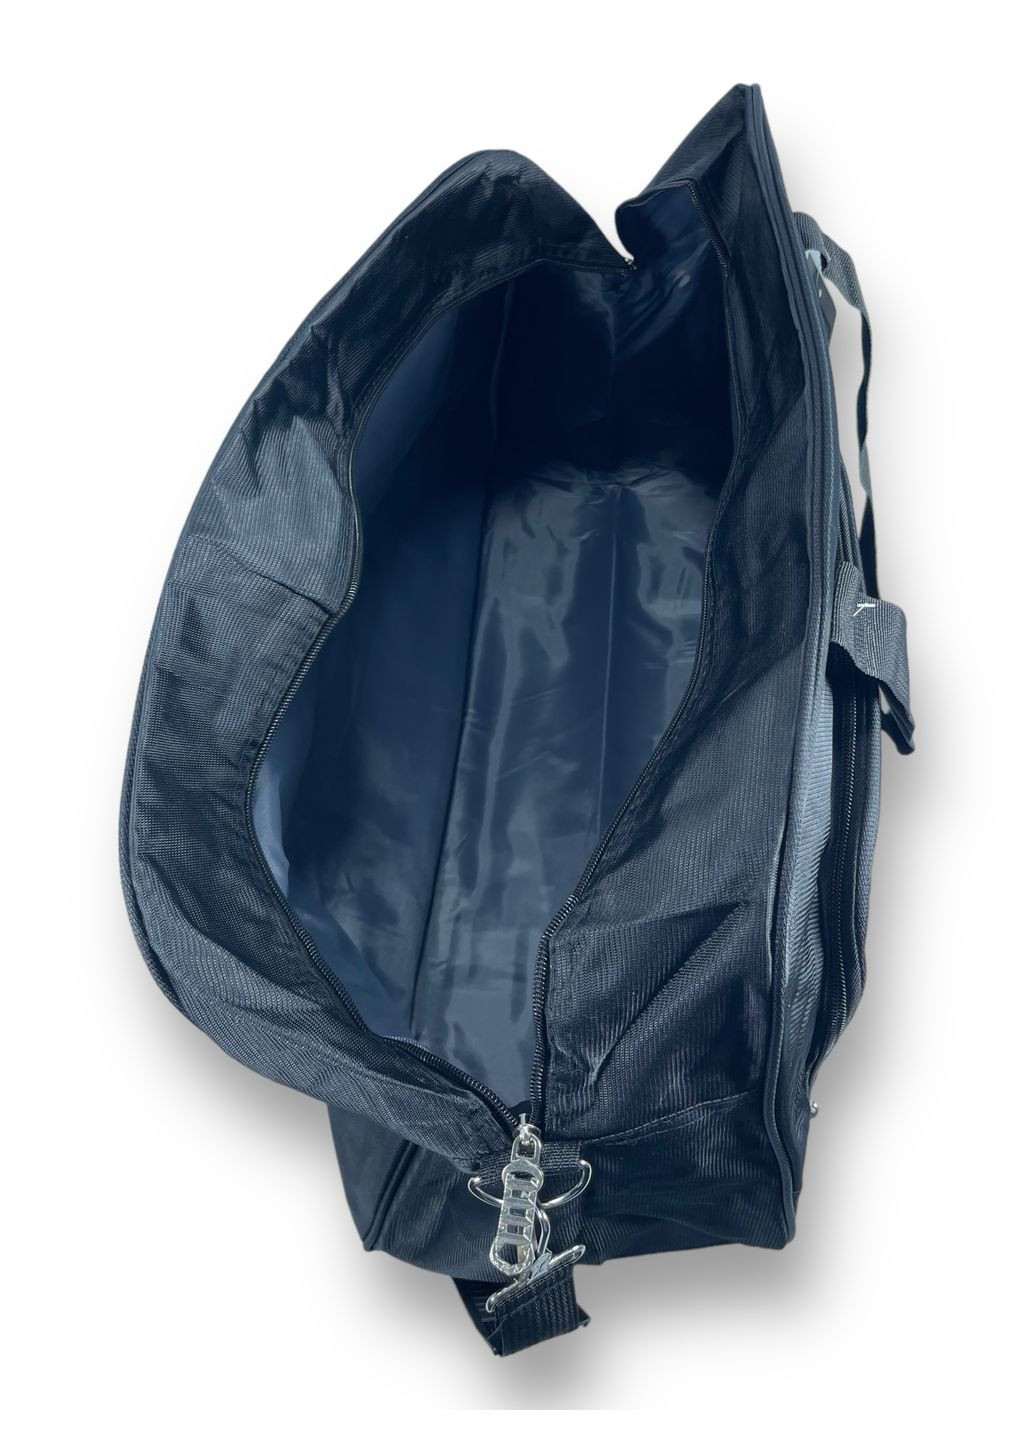 Дорожня сумка, 40 л,, 1 відділення, дві додаткових кишені, регульований з"ємний ремінь, розміри: 58*36*20 см, чорна Sports (268995068)